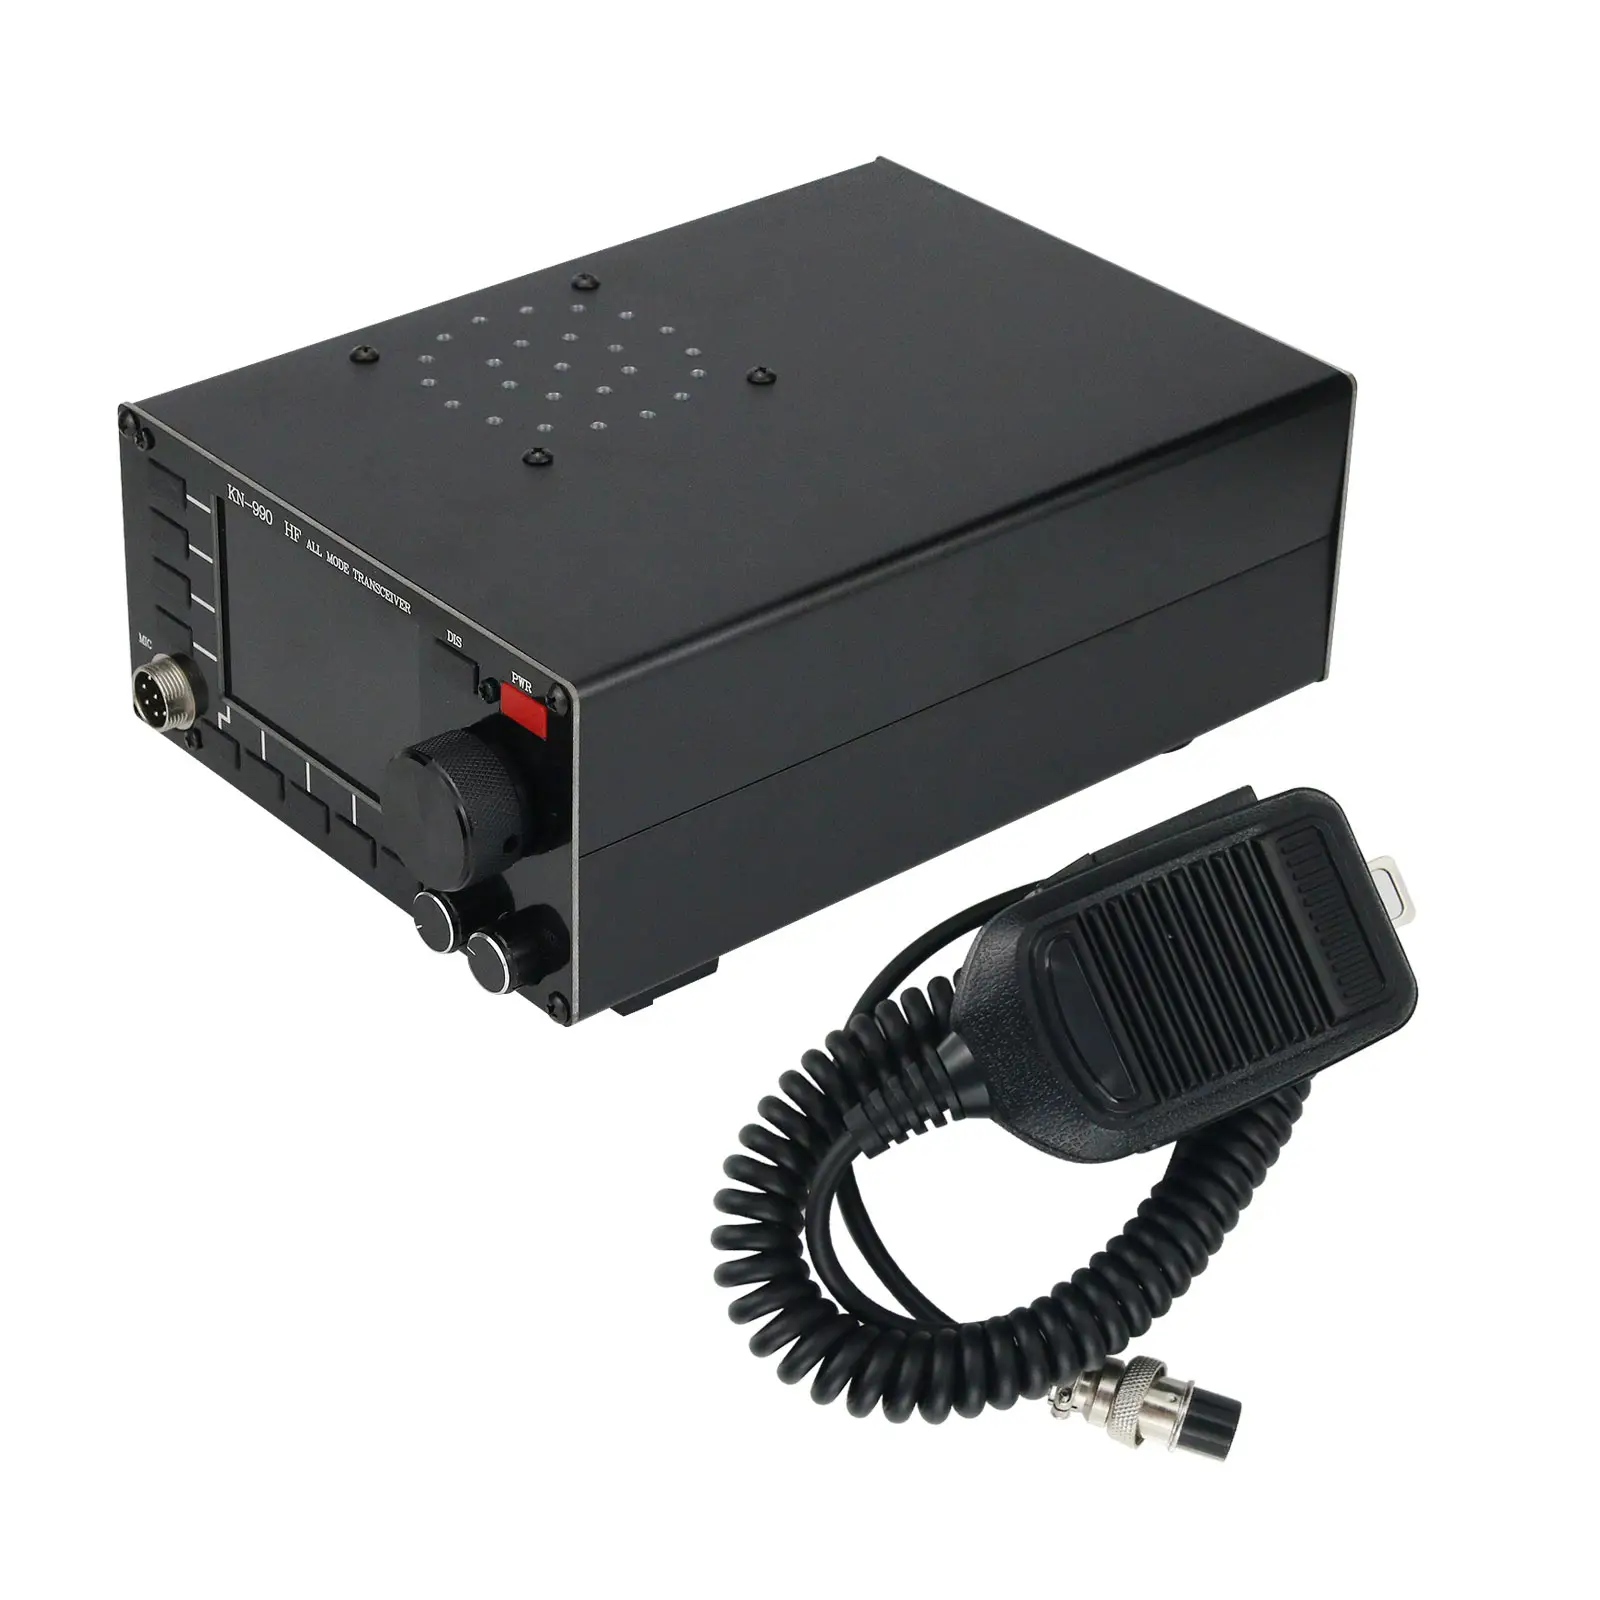 Transmissor de ondas curtas kn990 hf, transmissor e receptor de todos os modos de trabalho ssb/cw/am/fm